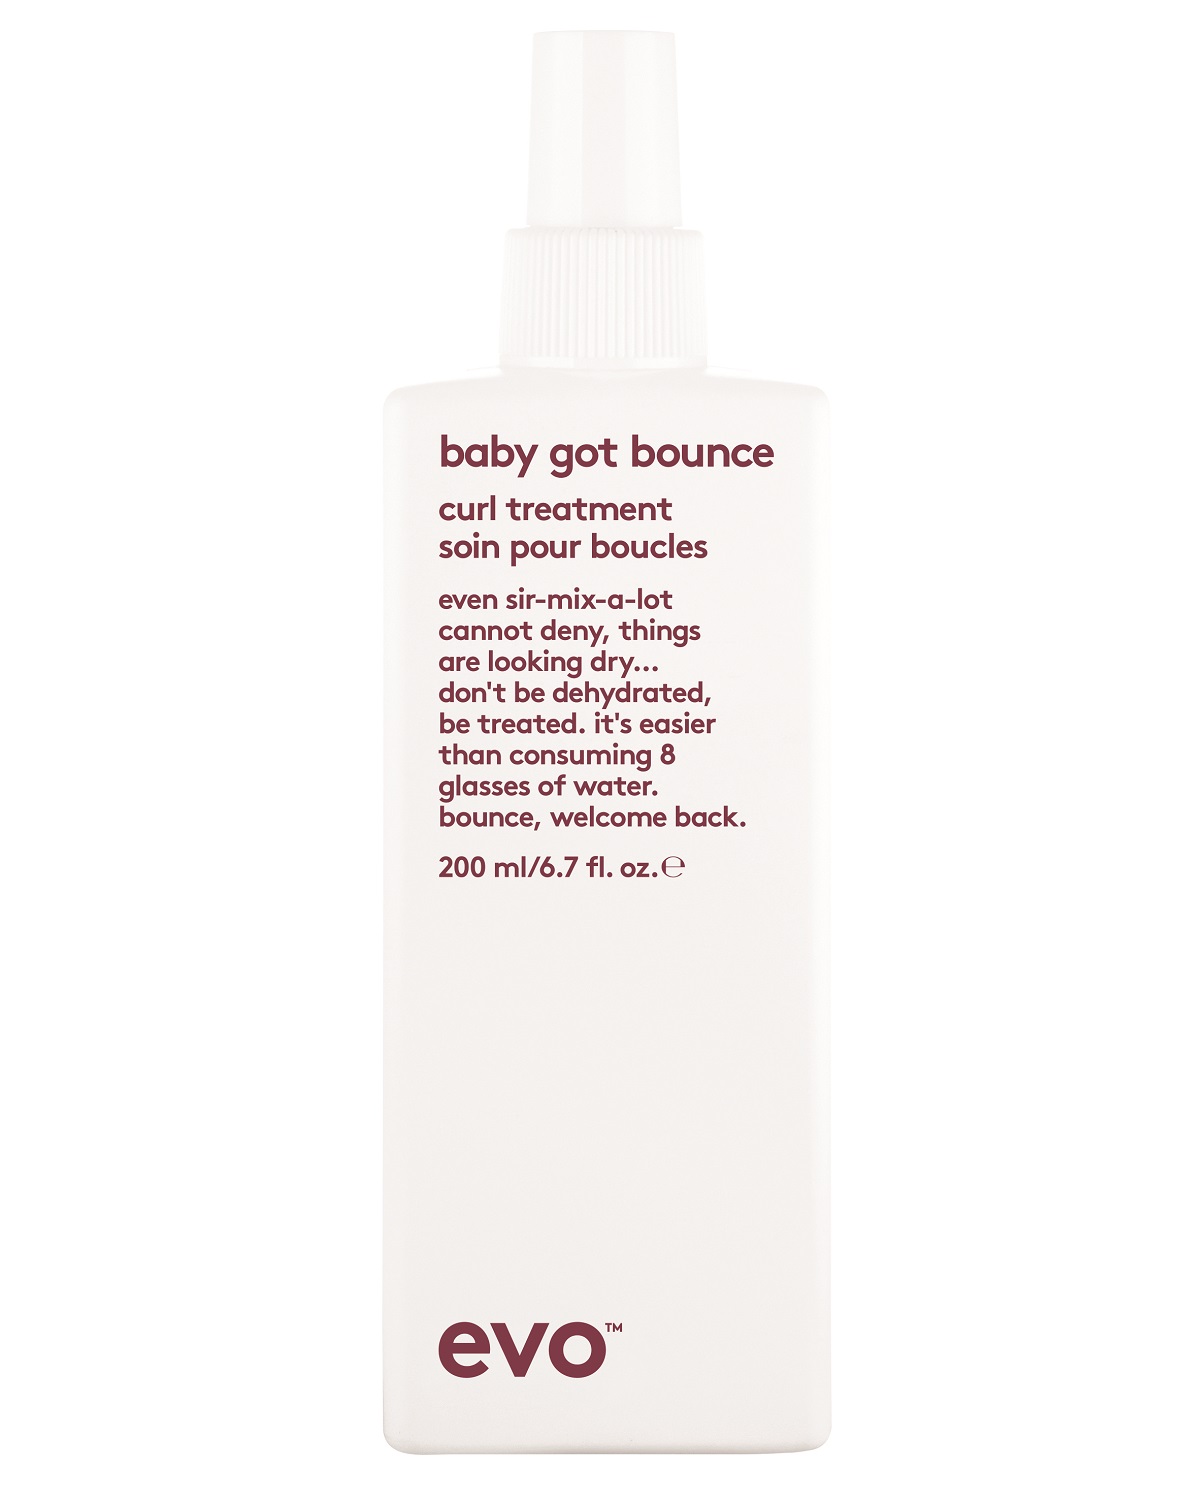 EVO Смываемый уход [упругий завиток] для вьющихся и кудрявых волос, 200 мл (EVO, curl) смываемый уход для вьющихся и кудрявых волос baby got bounce curl treatment уход 200мл